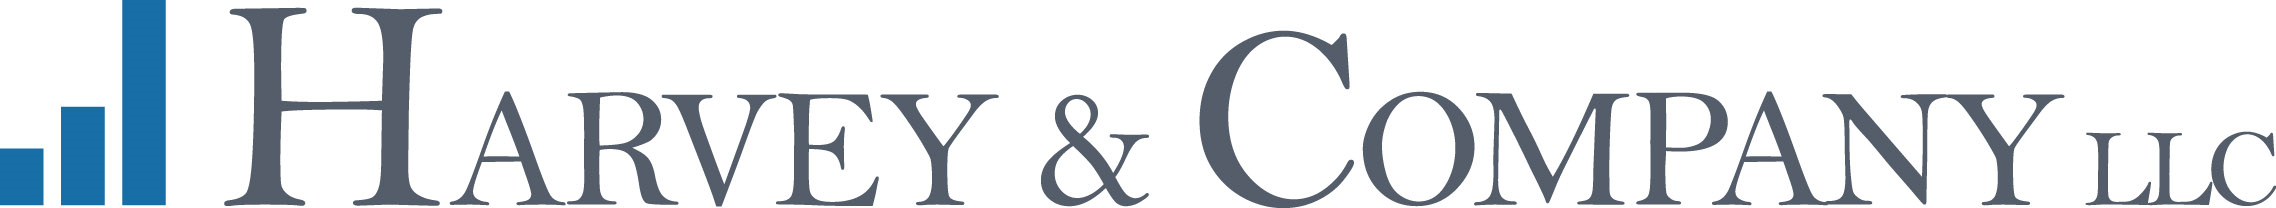 Harvey & Company LLC logo